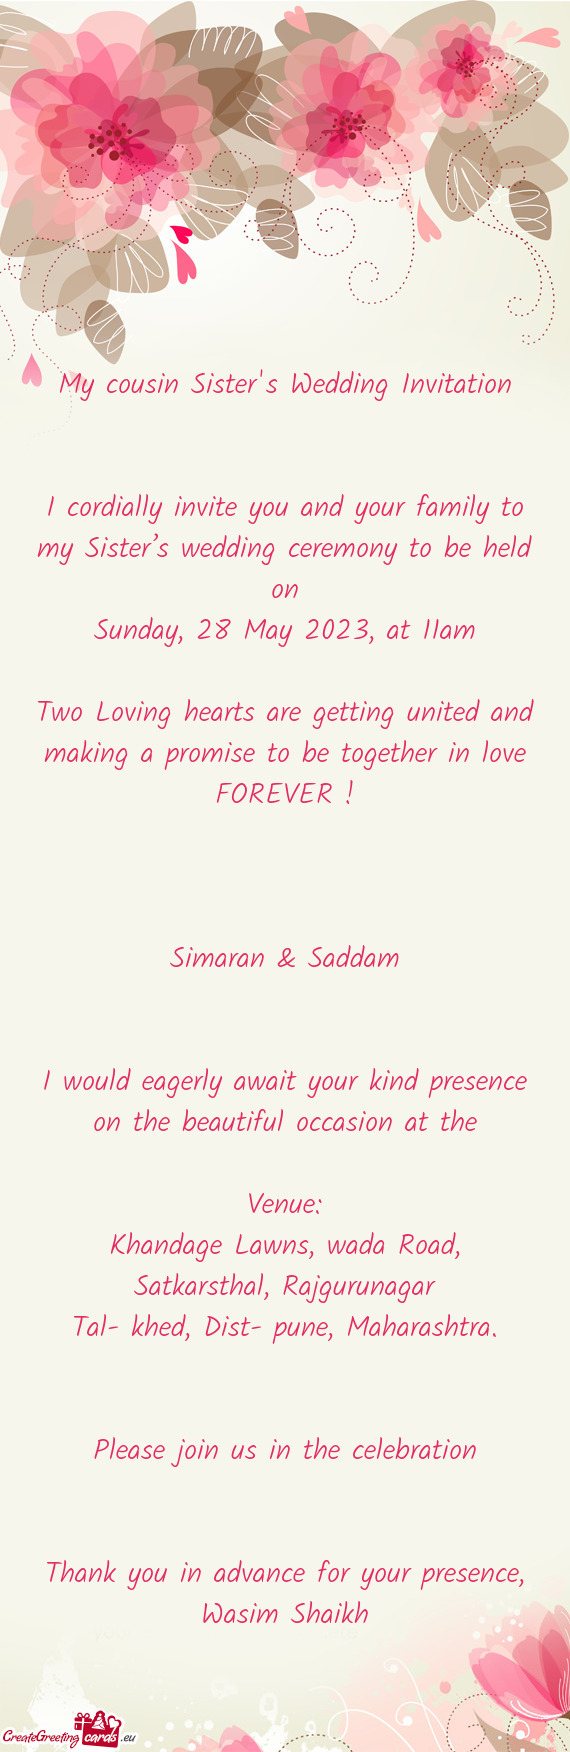 Sunday, 28 May 2023, at 11am